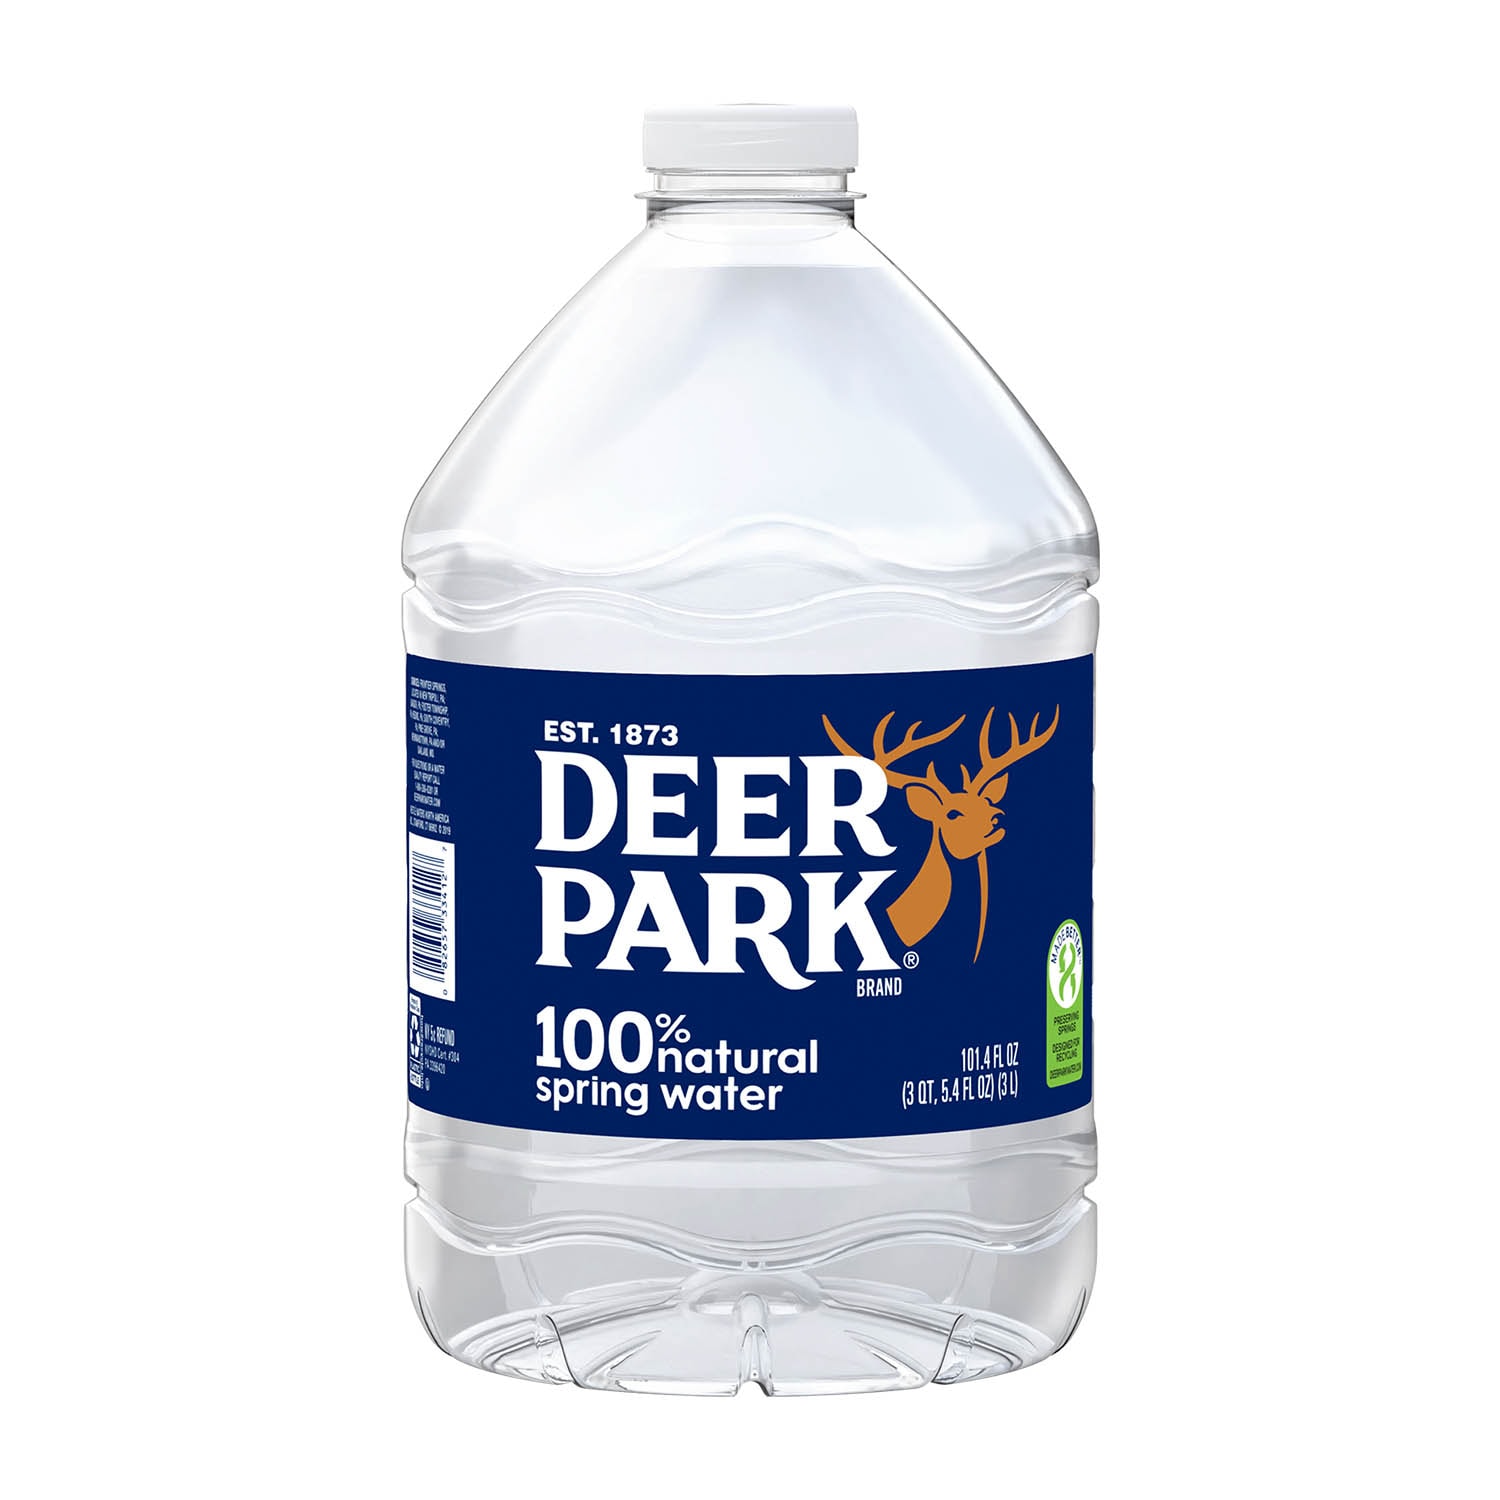 Deer Park Water at